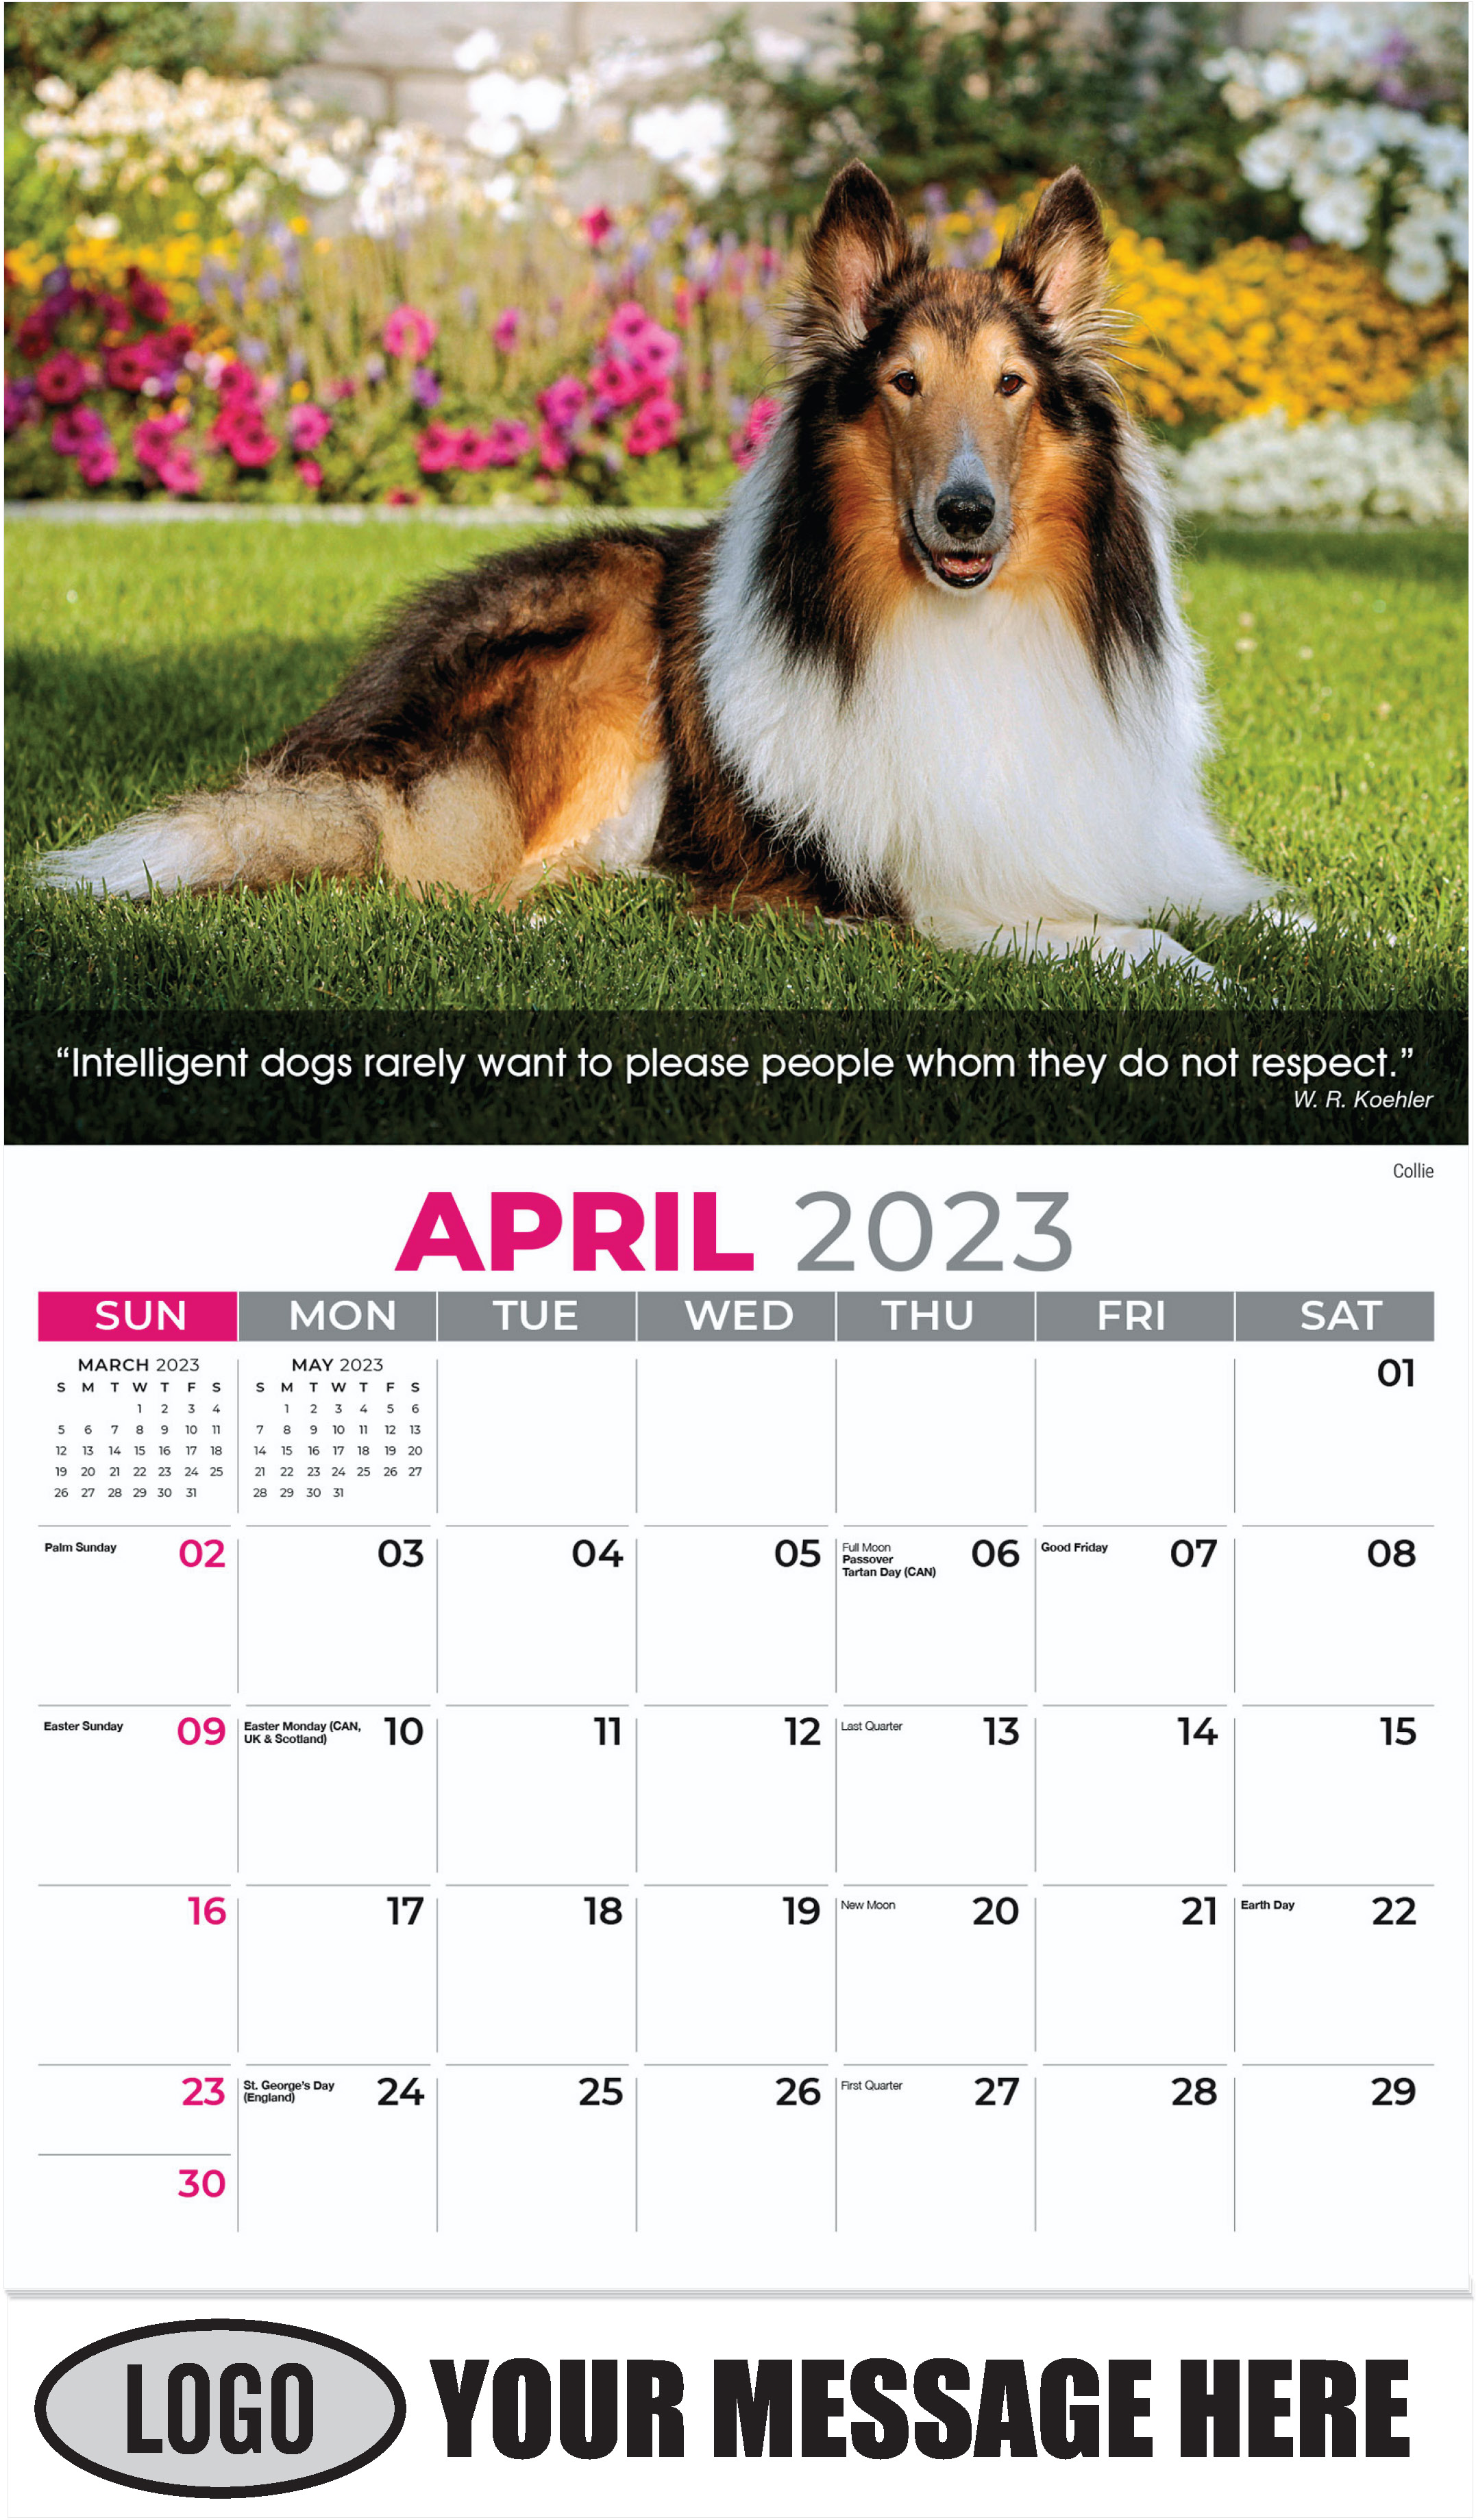 Collie - April - Dogs, ''Man's Best Friends'' 2023 Promotional Calendar